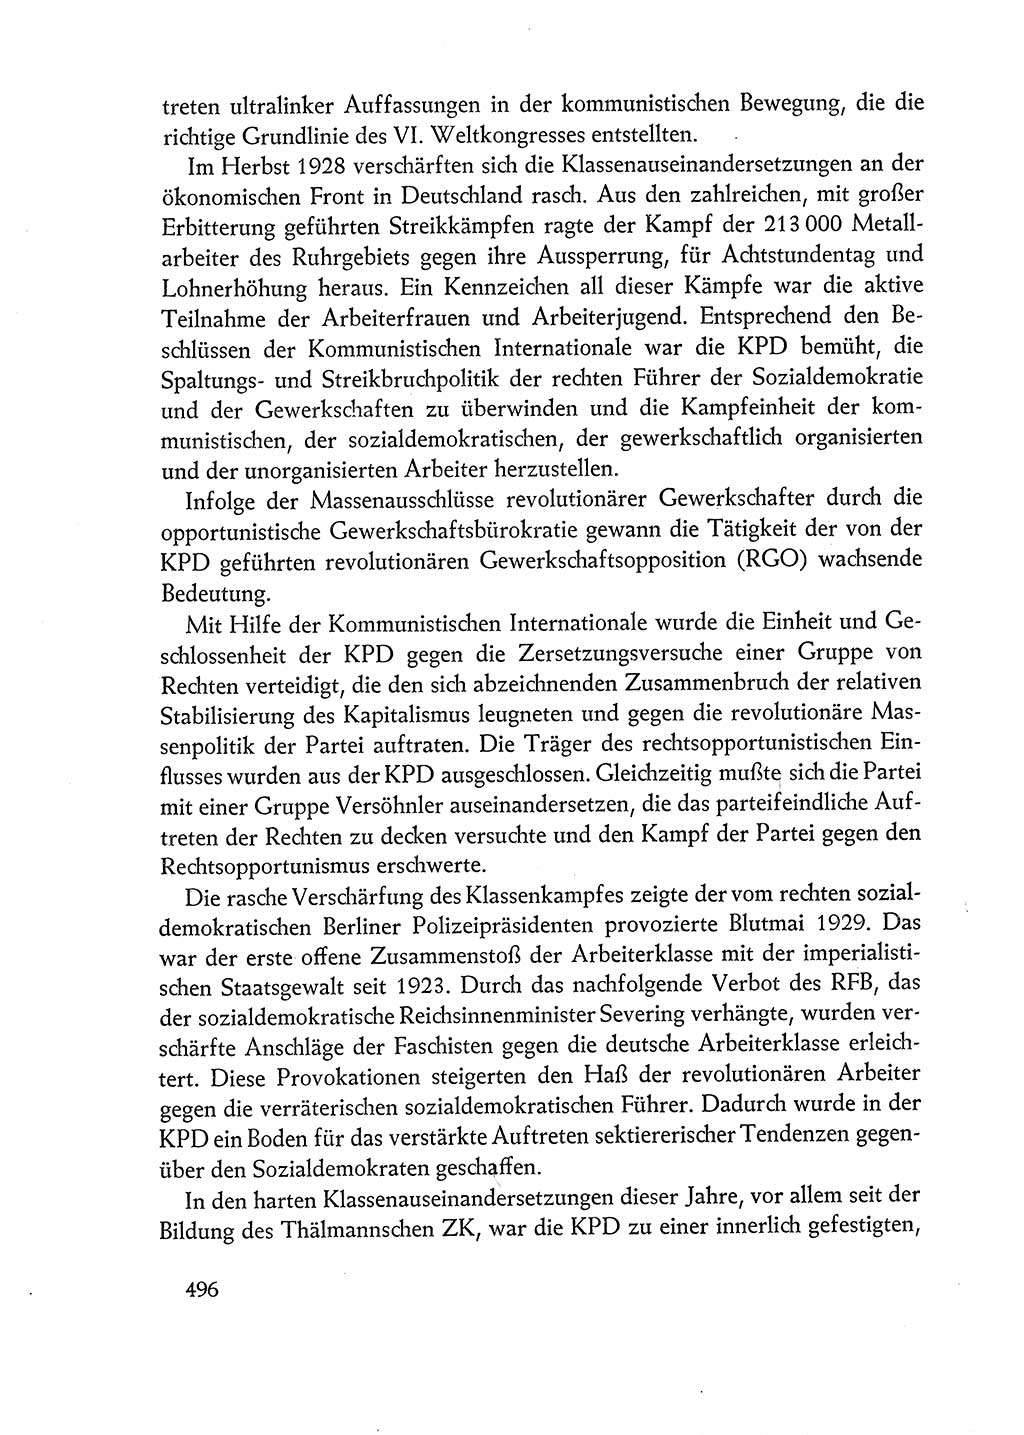 Dokumente der Sozialistischen Einheitspartei Deutschlands (SED) [Deutsche Demokratische Republik (DDR)] 1962-1963, Seite 496 (Dok. SED DDR 1962-1963, S. 496)